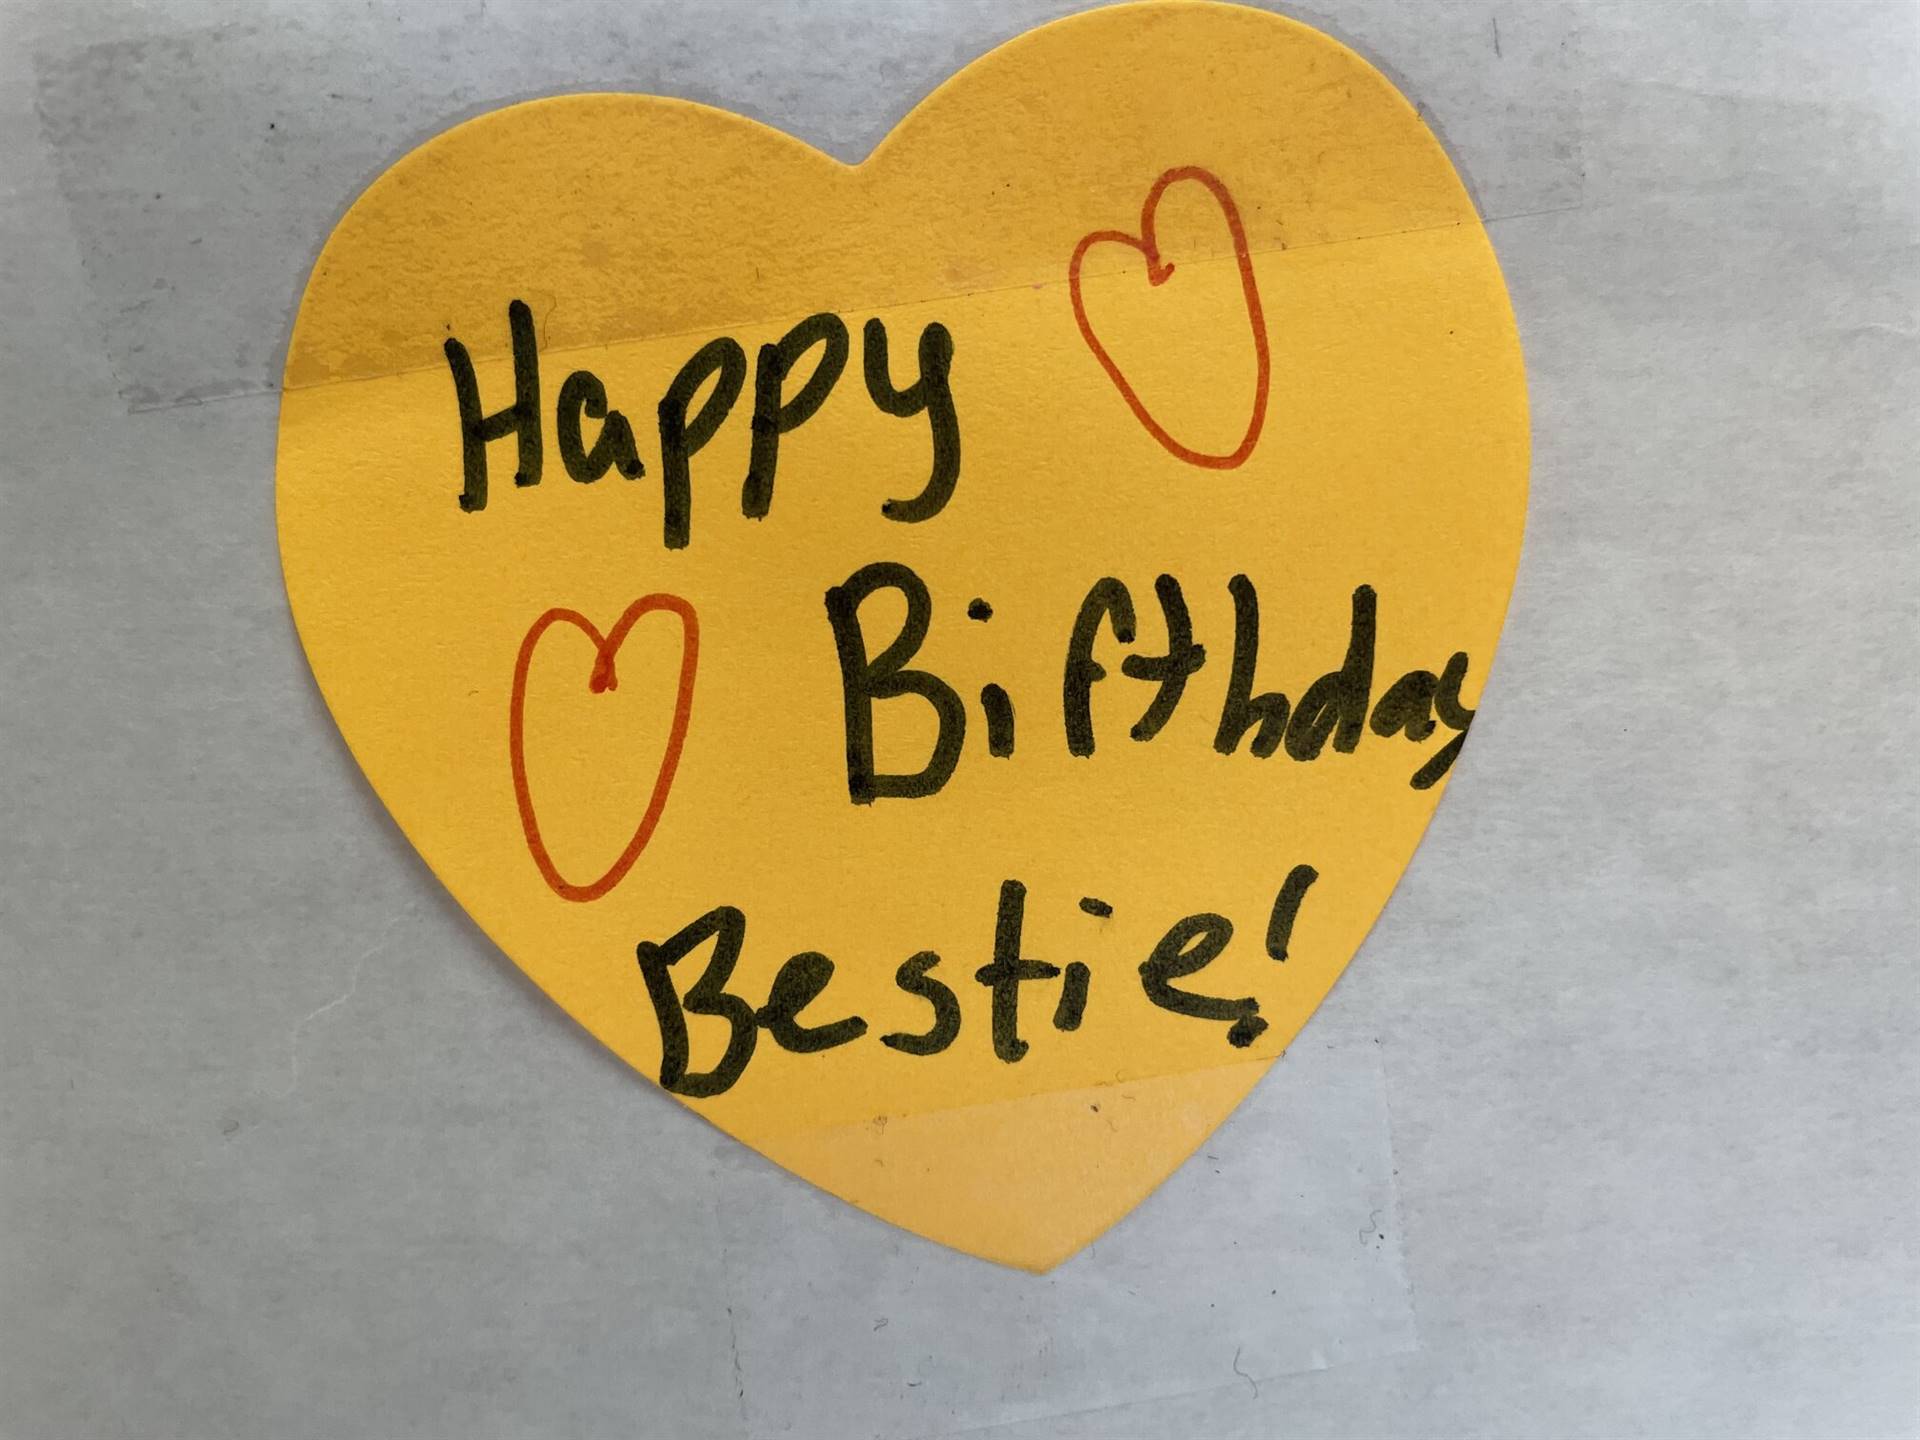 Happy Birthday, Bestie!